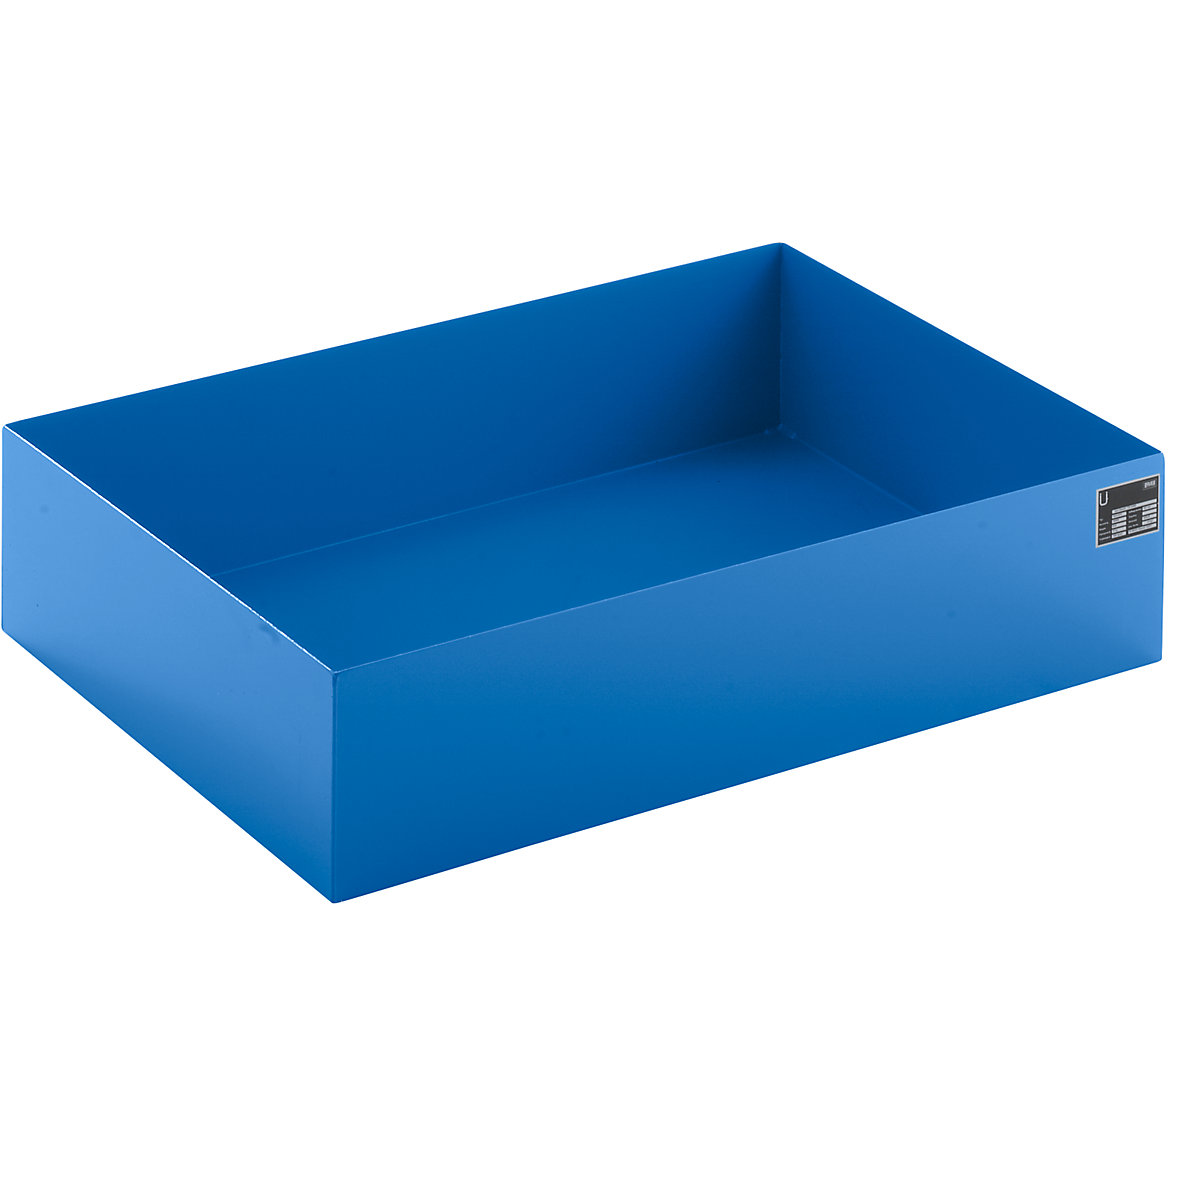 EUROKRAFTbasic – Pallet sump tray, LxWxH 1200 x 800 x 260 mm, blue RAL 5012